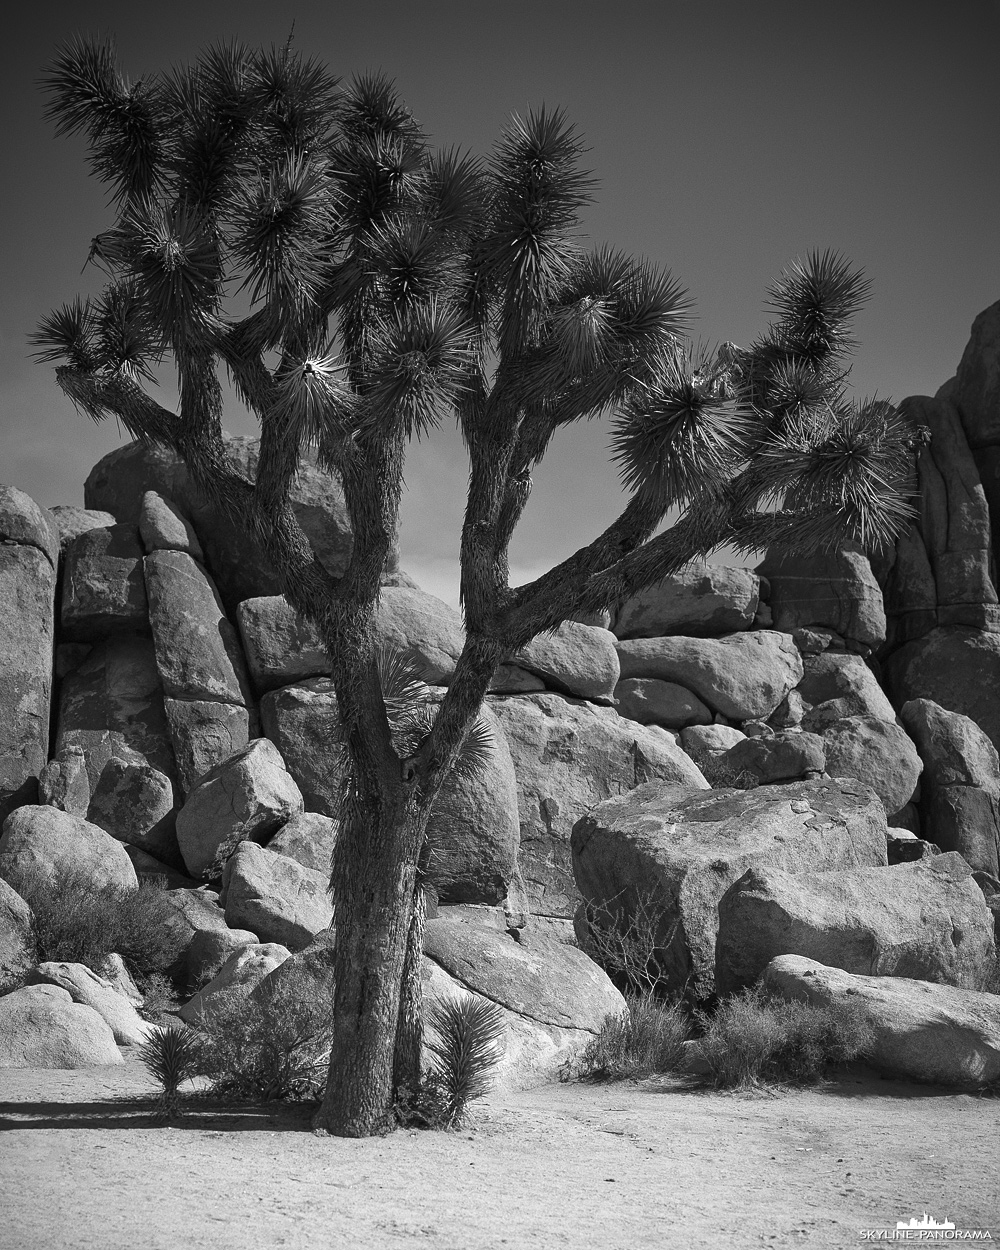 Aufnahme eines Joshua Trees im gleichnamigen Nationalpark im Südwesten der USA. Unzählige dieser Bäume findet man in der sehr kargen Wüstenlandschaft des Joshua Tree Nationalparks, hier wurde er im Großformat auf Schwarzweißfilm fotografiert.